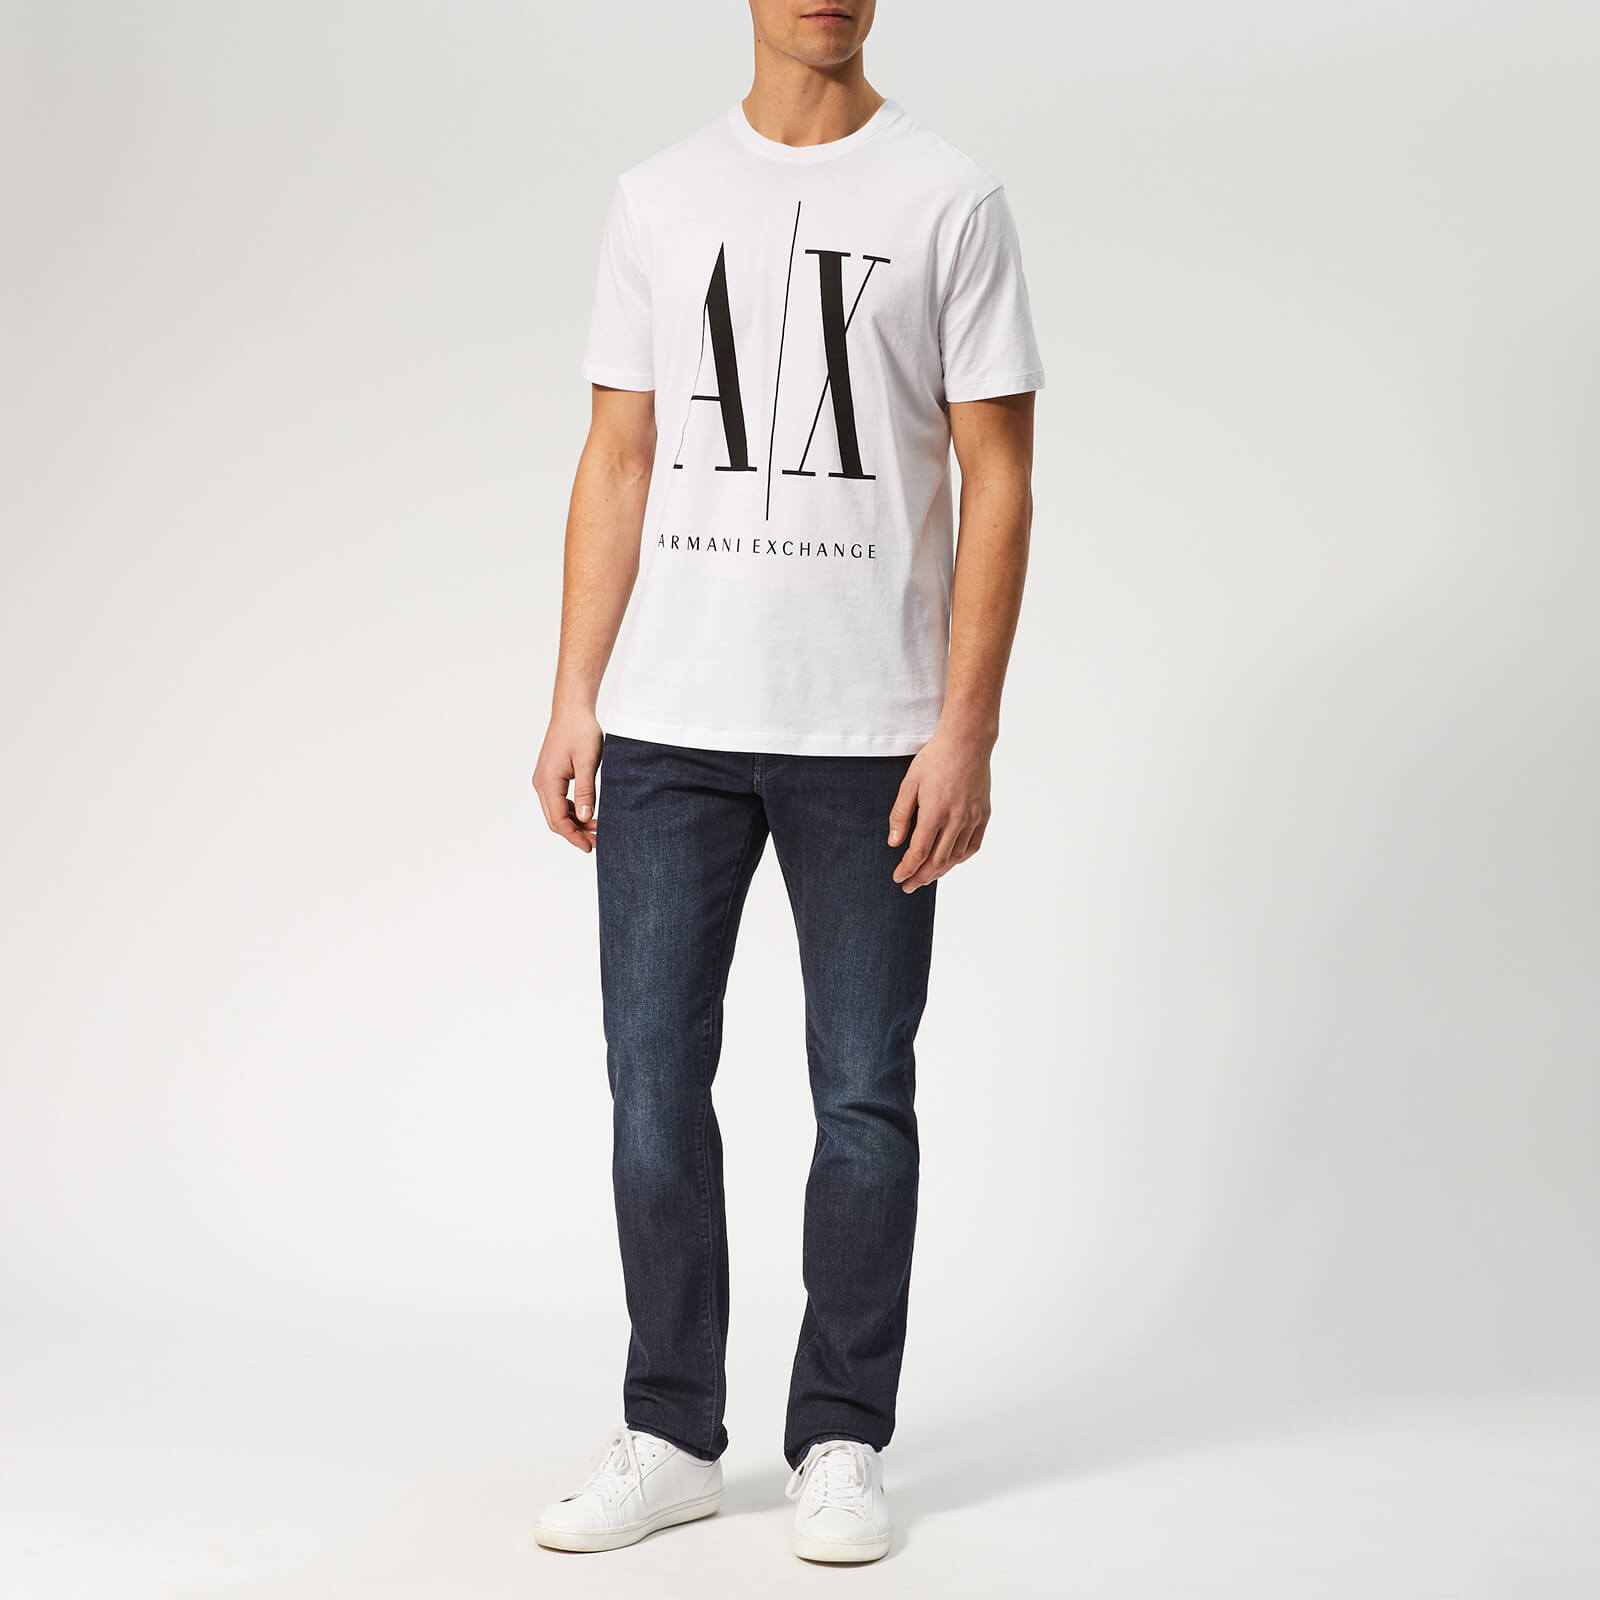 Armani Exchange Men's Big Ax T-Shirt - White/Black - L